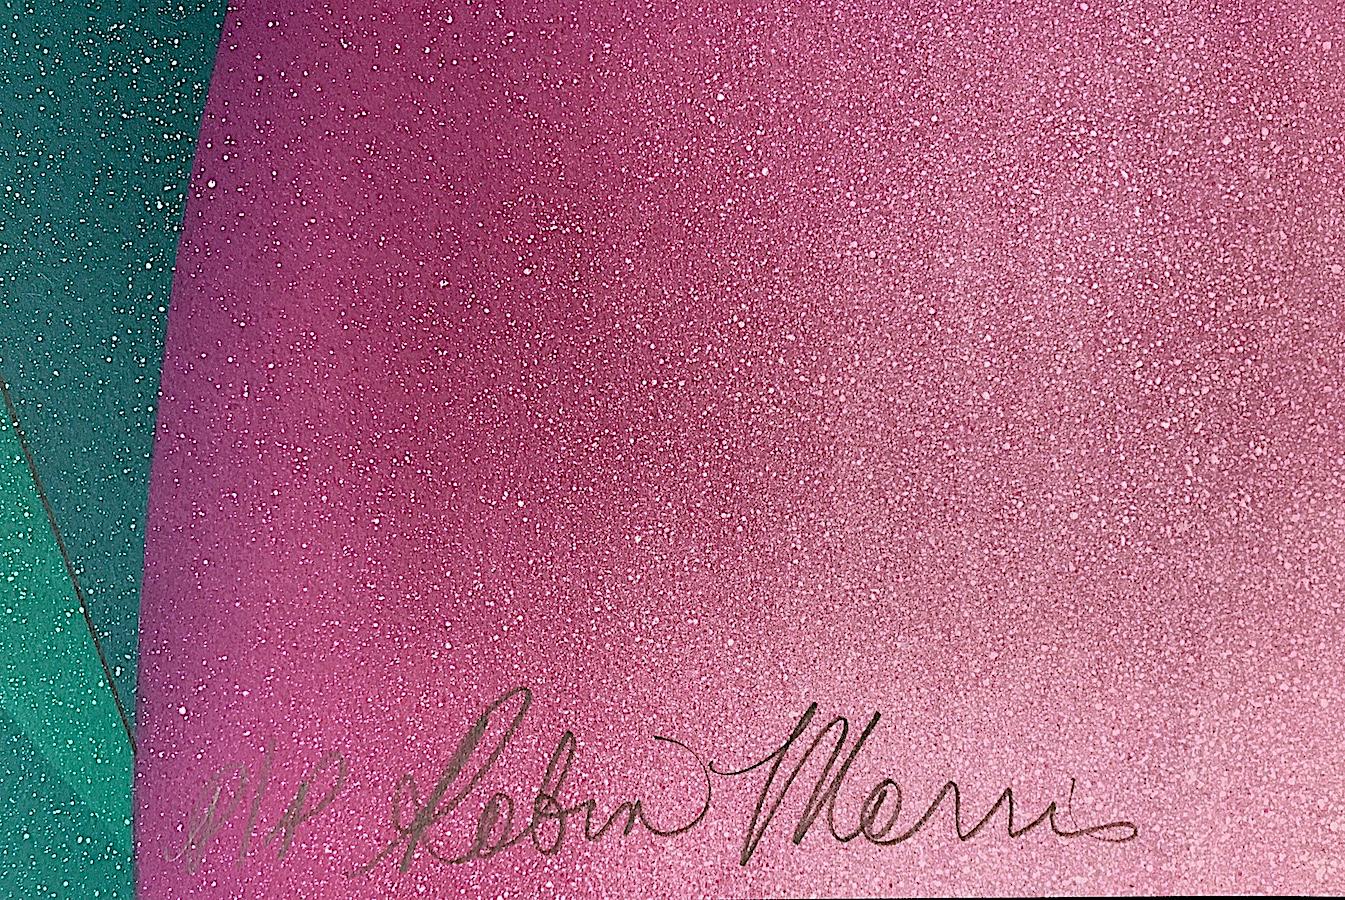 WAITING FOR THE BOYS, de la femme artiste Robin Morris, est une lithographie originale en édition limitée, imprimée à l'aide de techniques de lithographie à la main sur du papier d'archives Arches, 100 % sans acide. RIVALS est un portrait